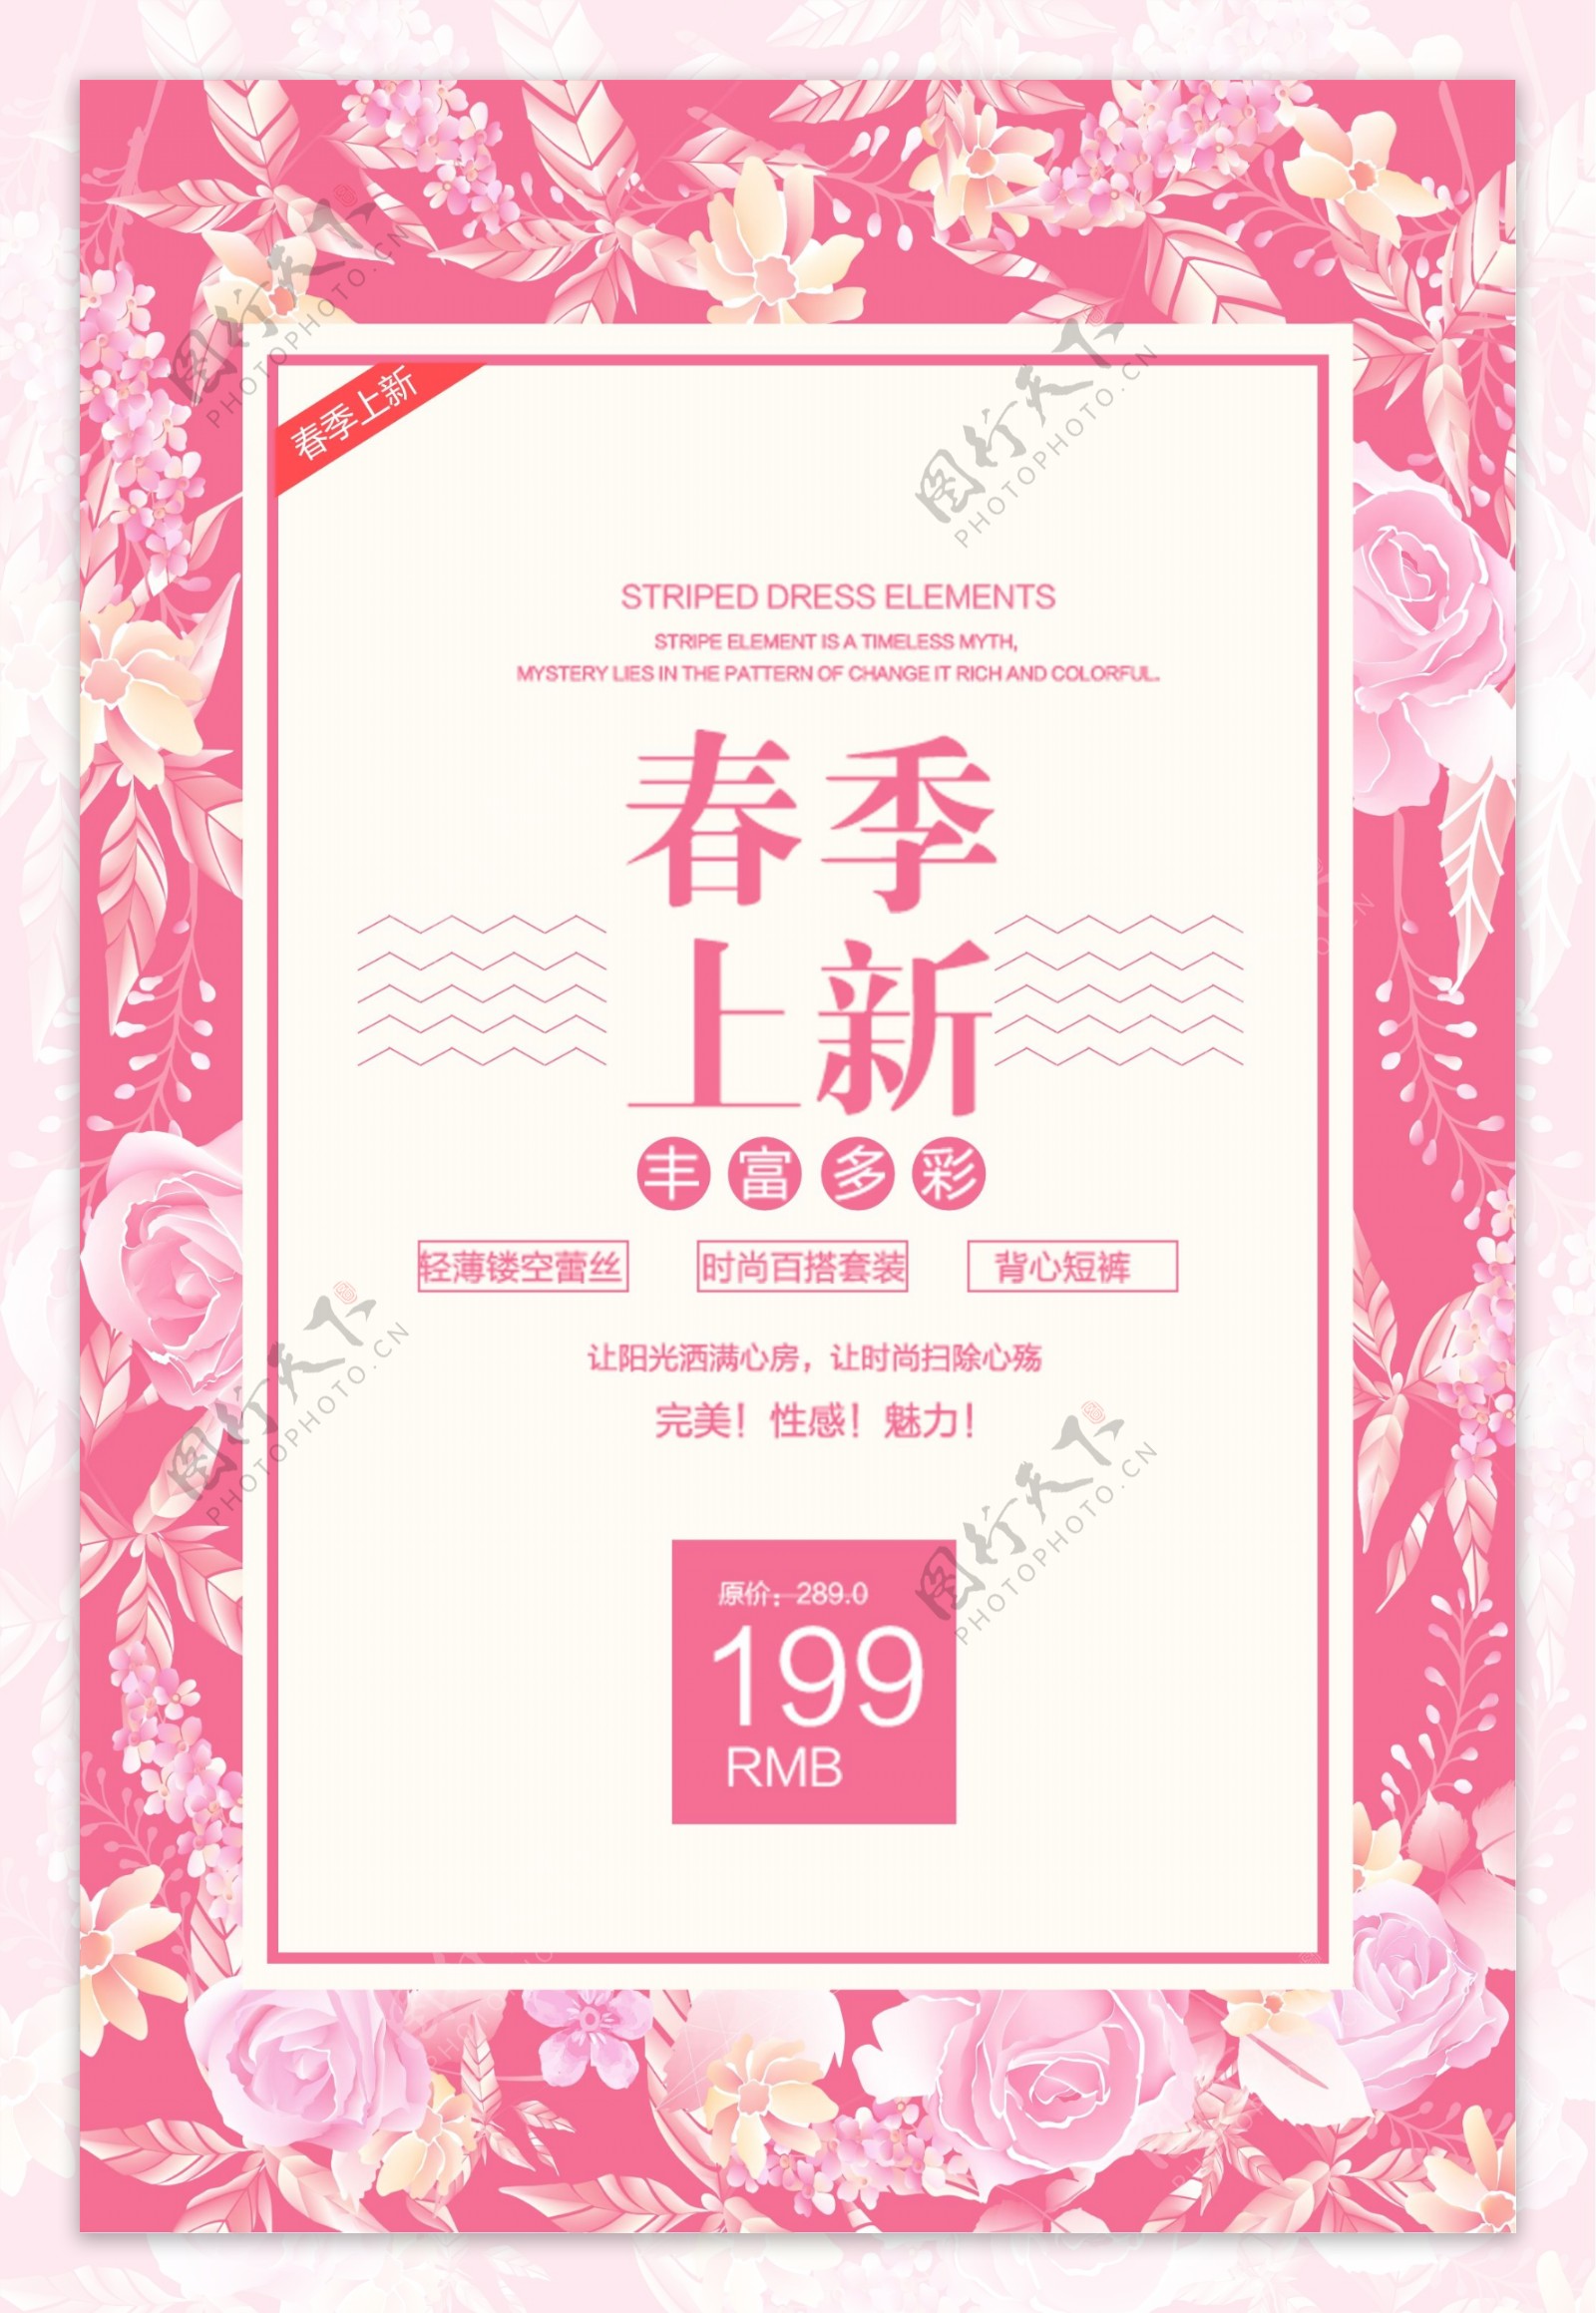 粉色春季促销活动海报设计